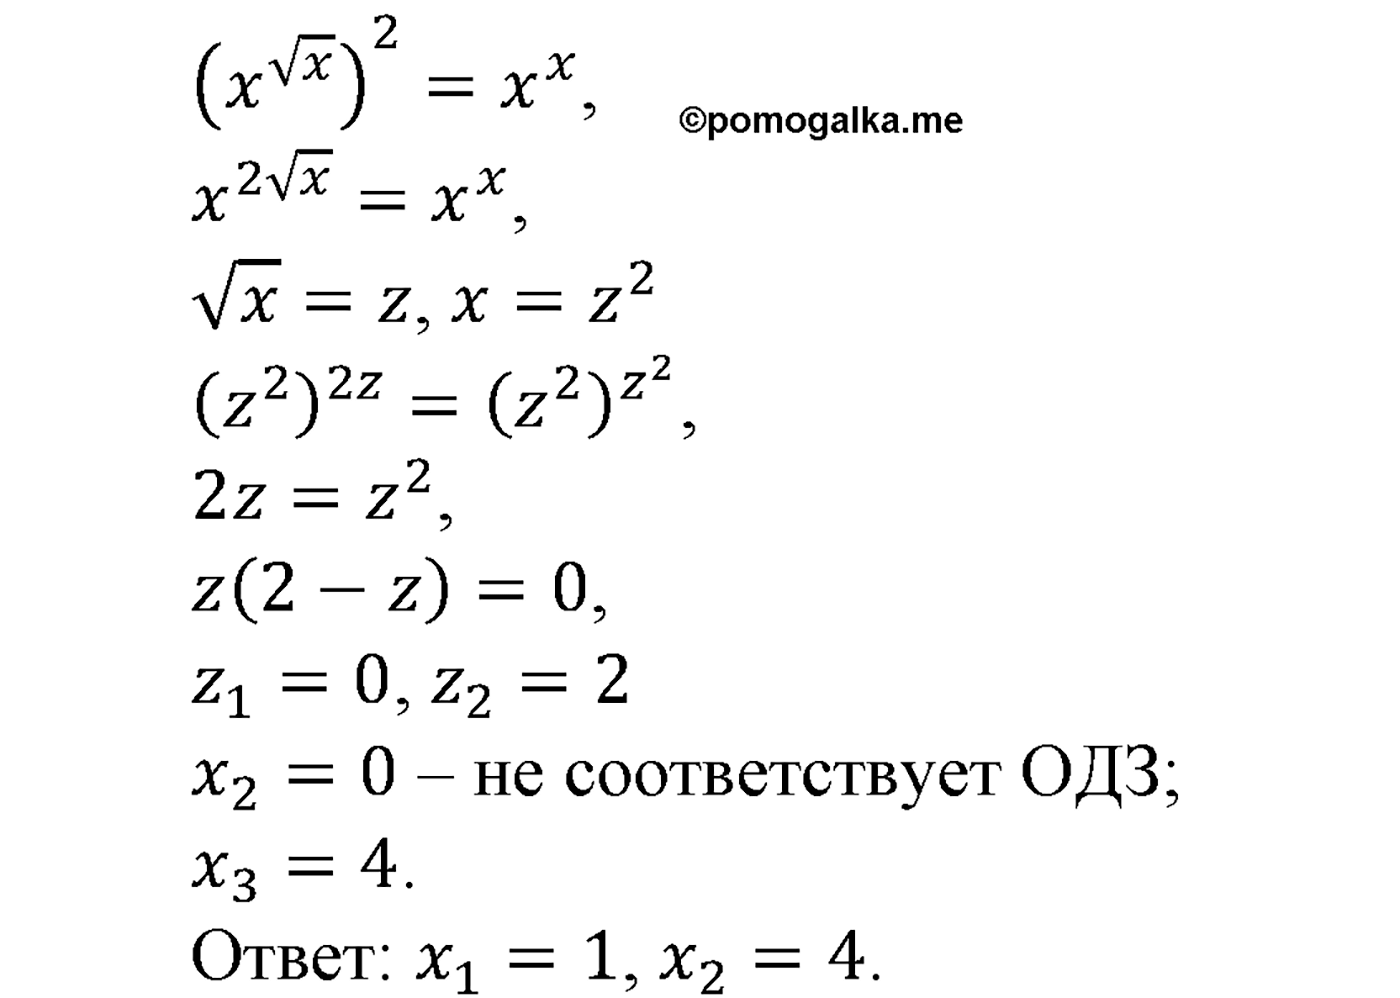 разбор задачи №1355 по алгебре за 10-11 класс из учебника Алимова, Колягина